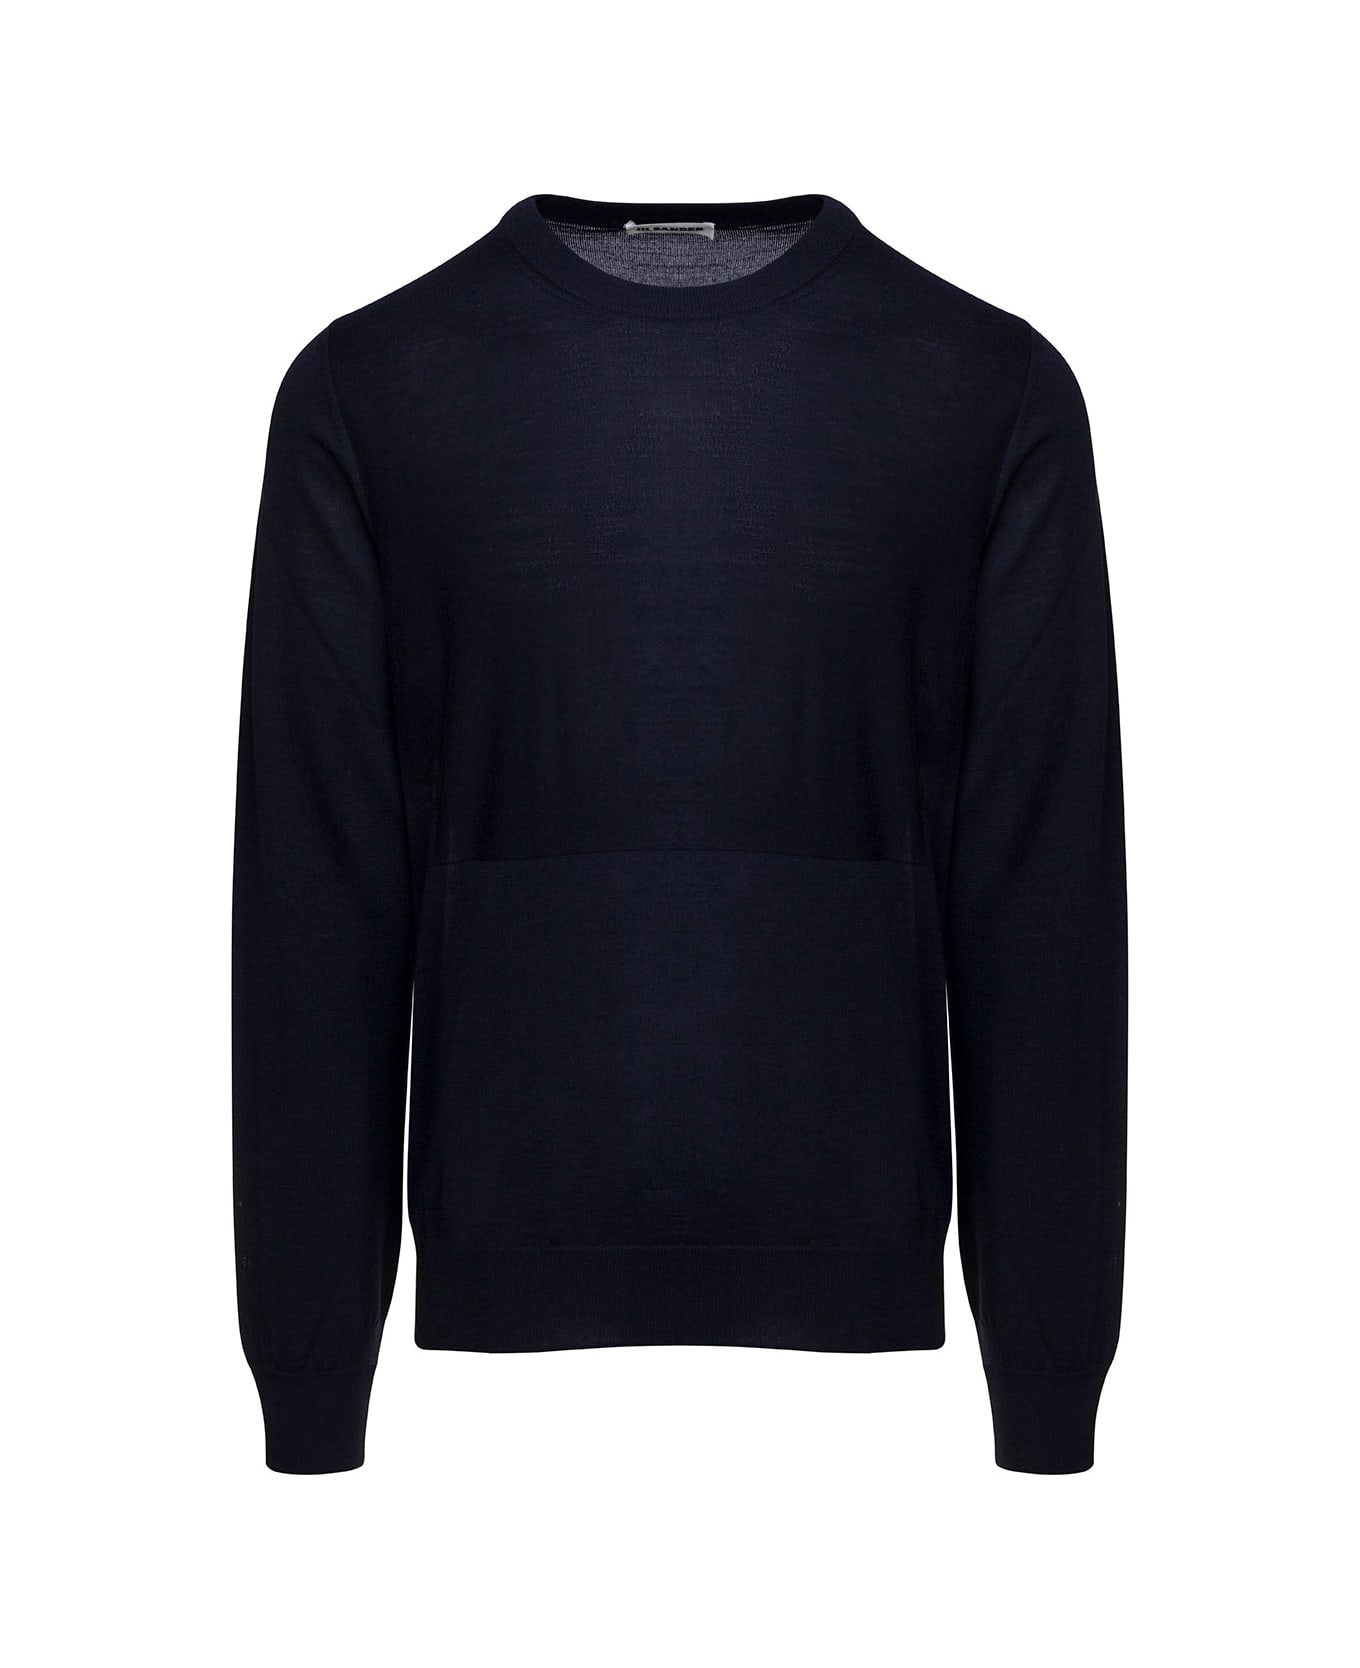 Jil Sander Blue Crewneck Sweater With Long Sleeves In Wool Man - Blu